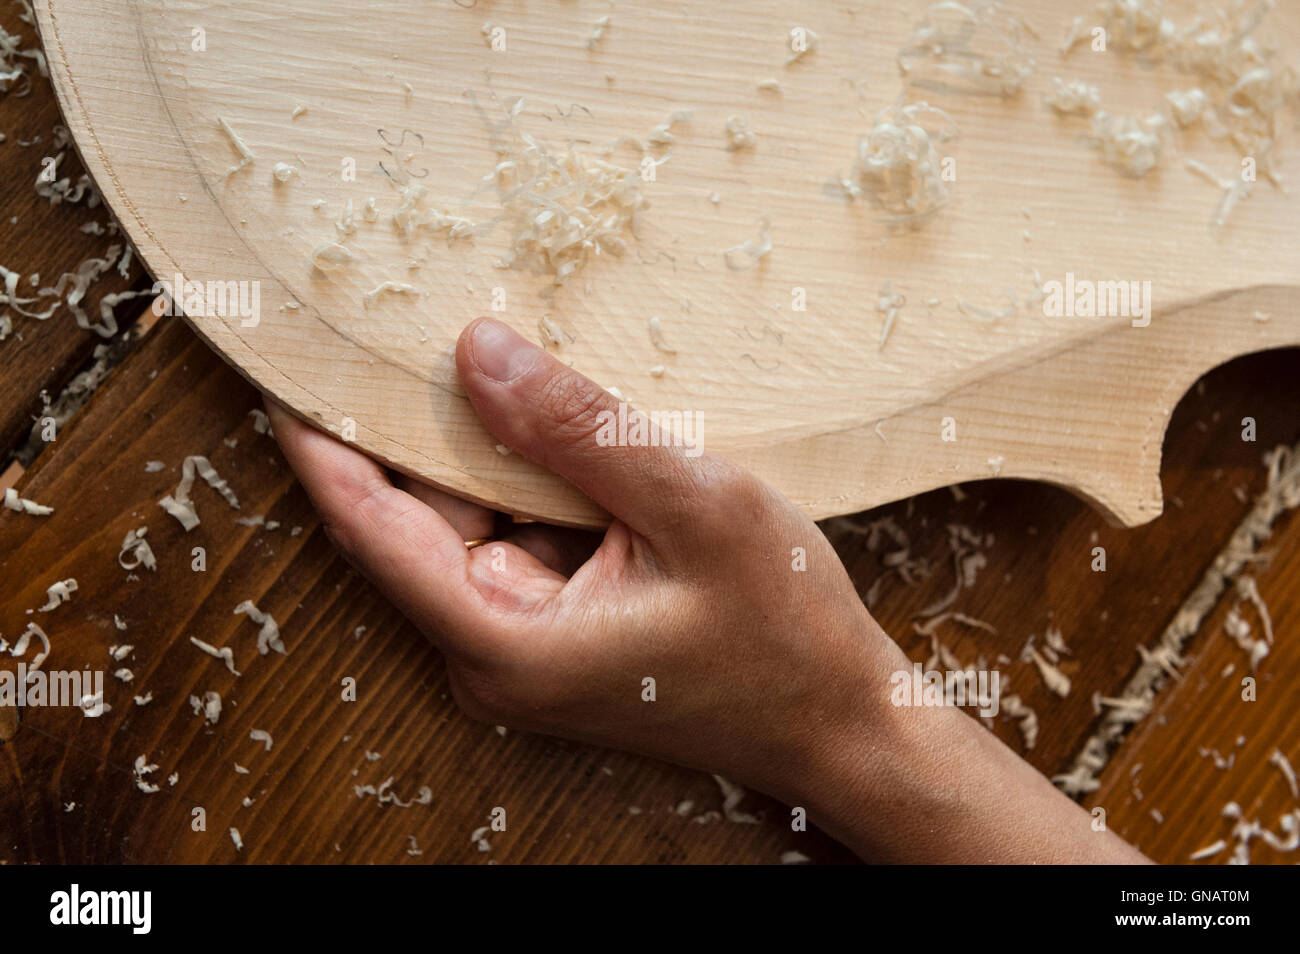 La Forêt de violons, de Paneveggio, Italie. Giovanna Chittò, luthier  (luthier), façonner le bois pour un violoncelle dans son atelier Photo  Stock - Alamy